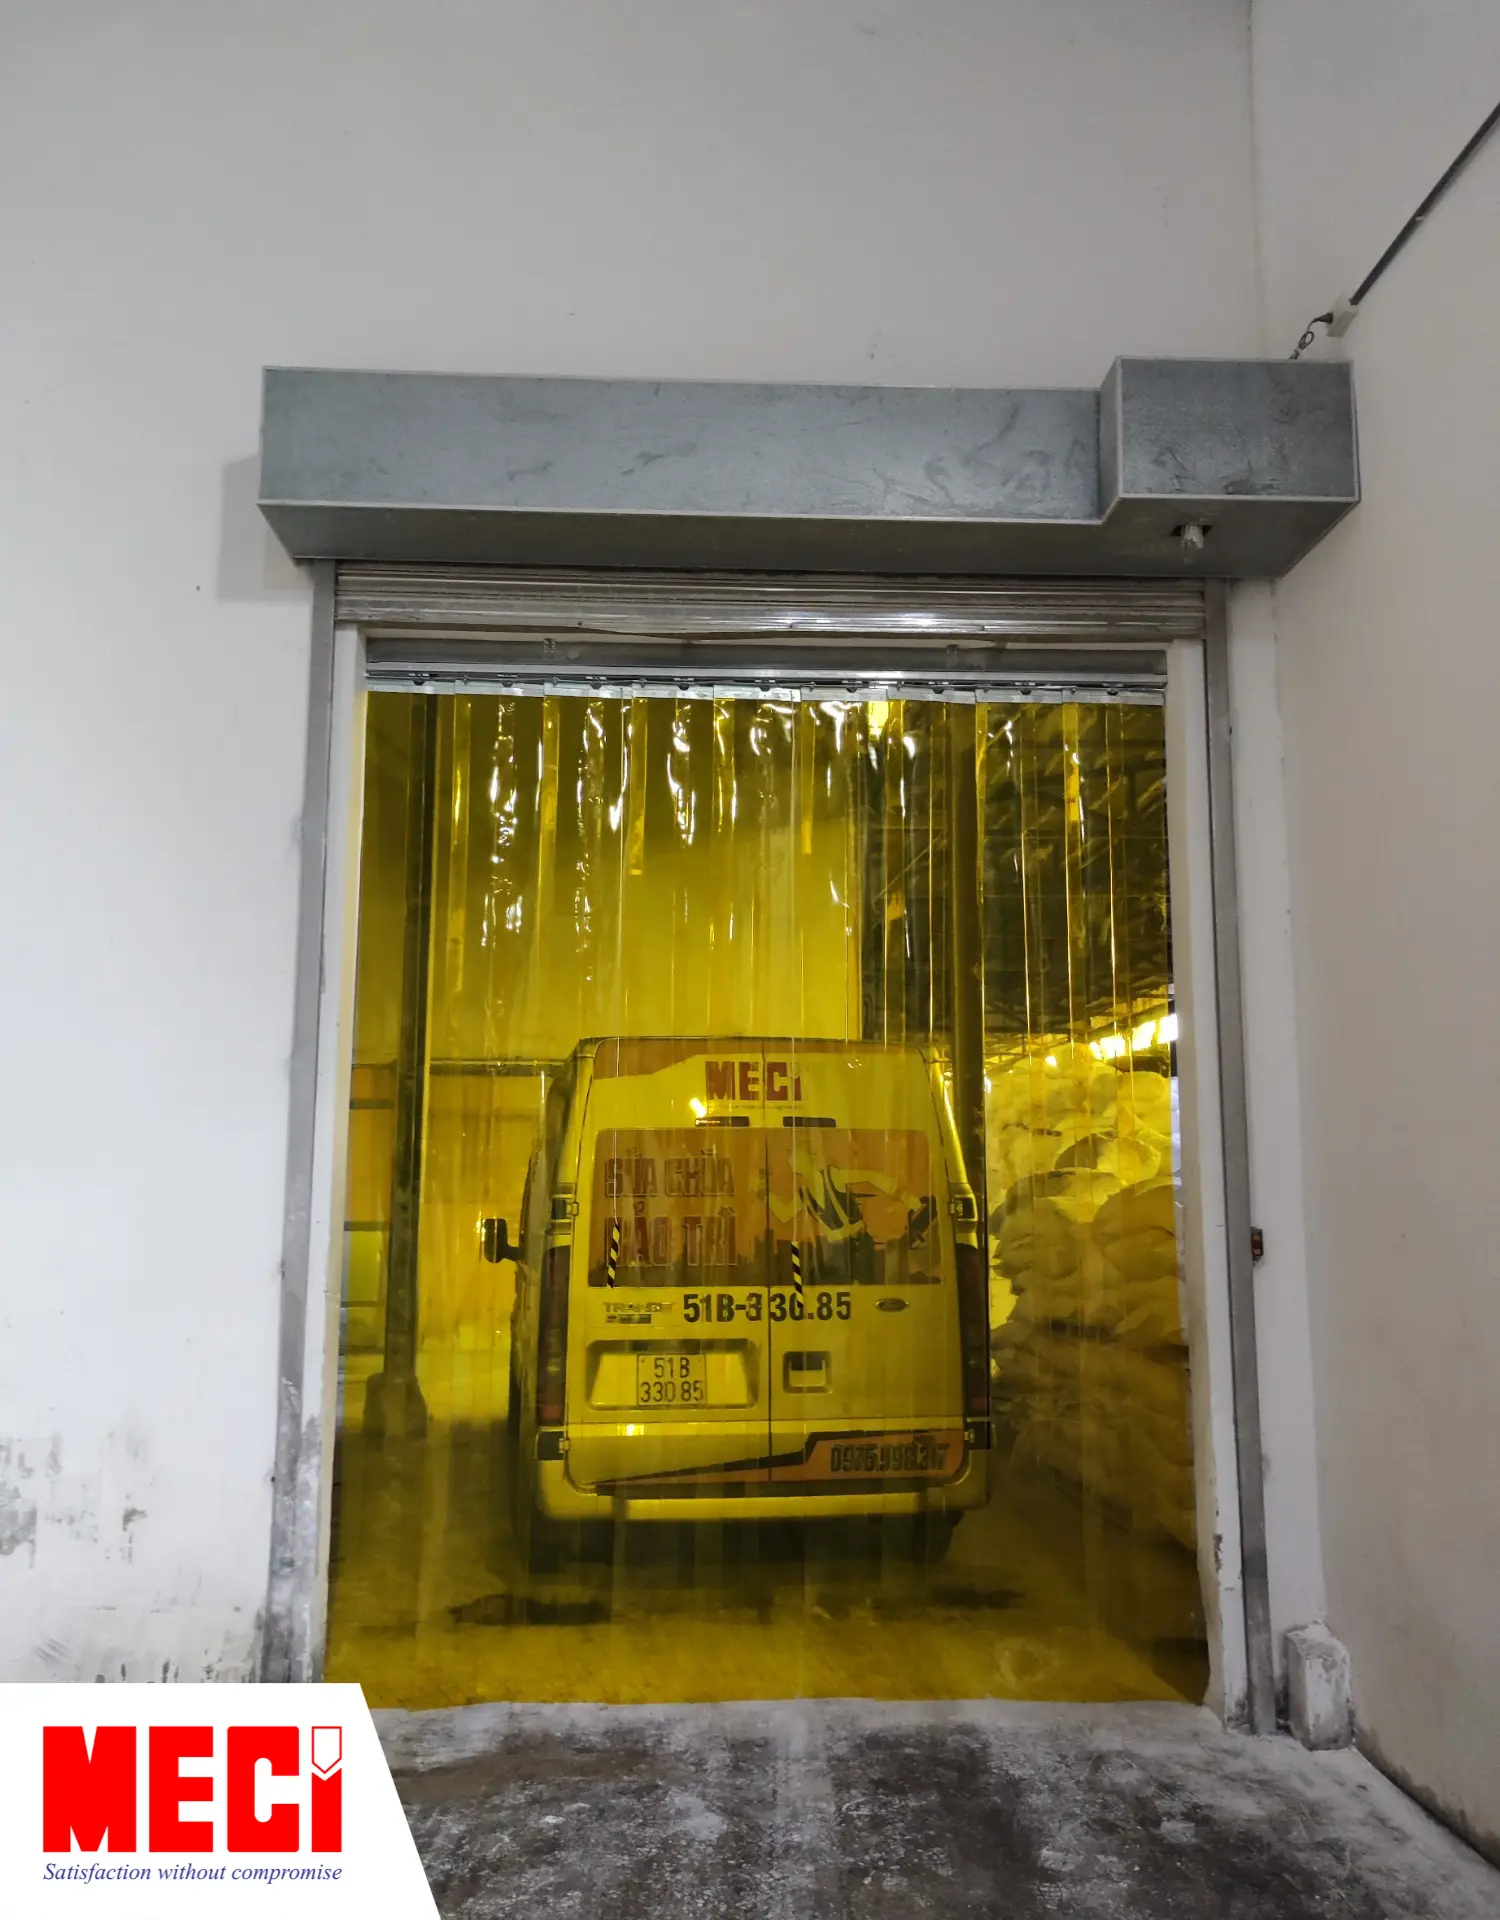 rèm nhựa pvc hệ xếp xoay màu vàng được lắp ở lối ra vào một nhà kho, phía trong có xe bán tải mang logo MECI